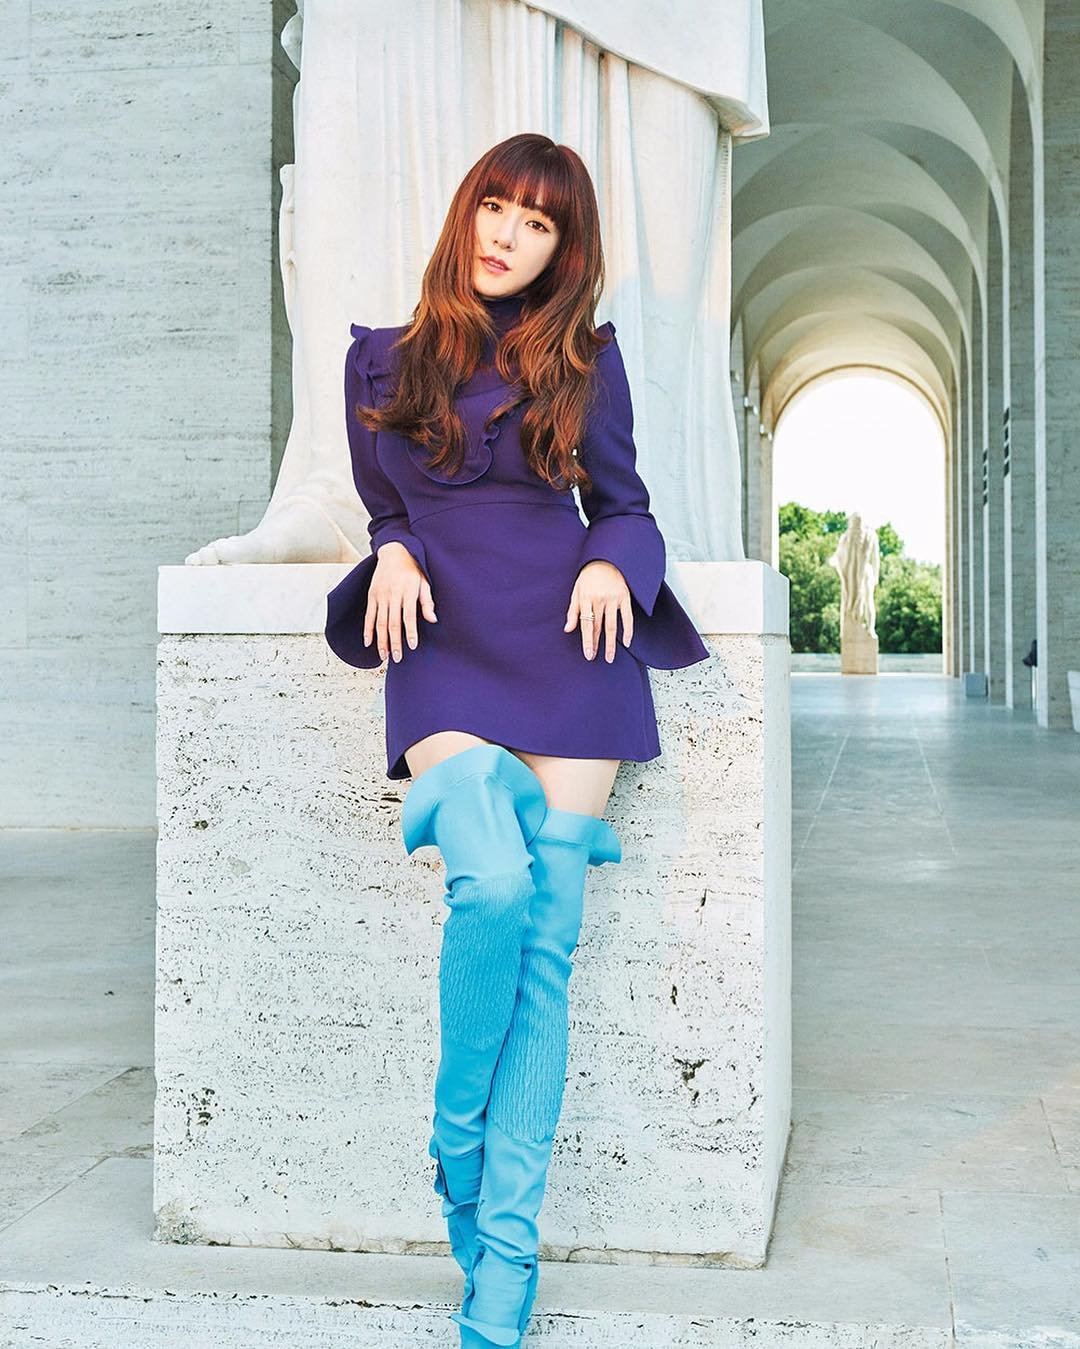 [PIC][07-07-2016]Tiffany xuất hiện trên trang bìa tháng 10 của tạp chí "ELLE HONGKONG" X4DnfXx9u--3000x3000